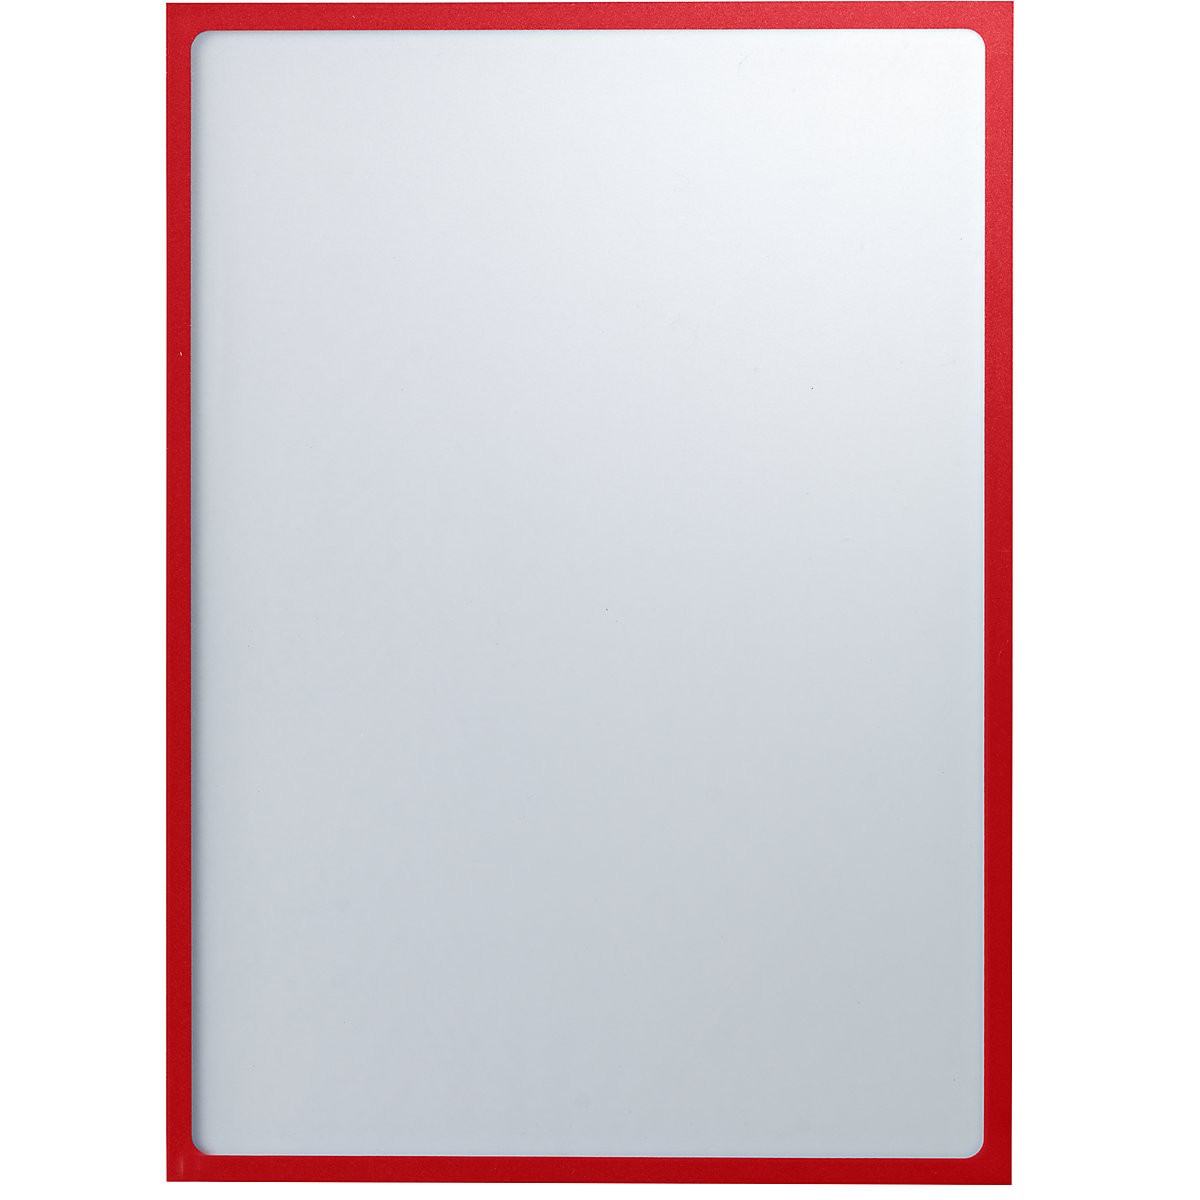 EUROKRAFTbasic – Pochette info magnétique, format A3, l x h 312 x 435 mm, cadre rouge, lot de 30